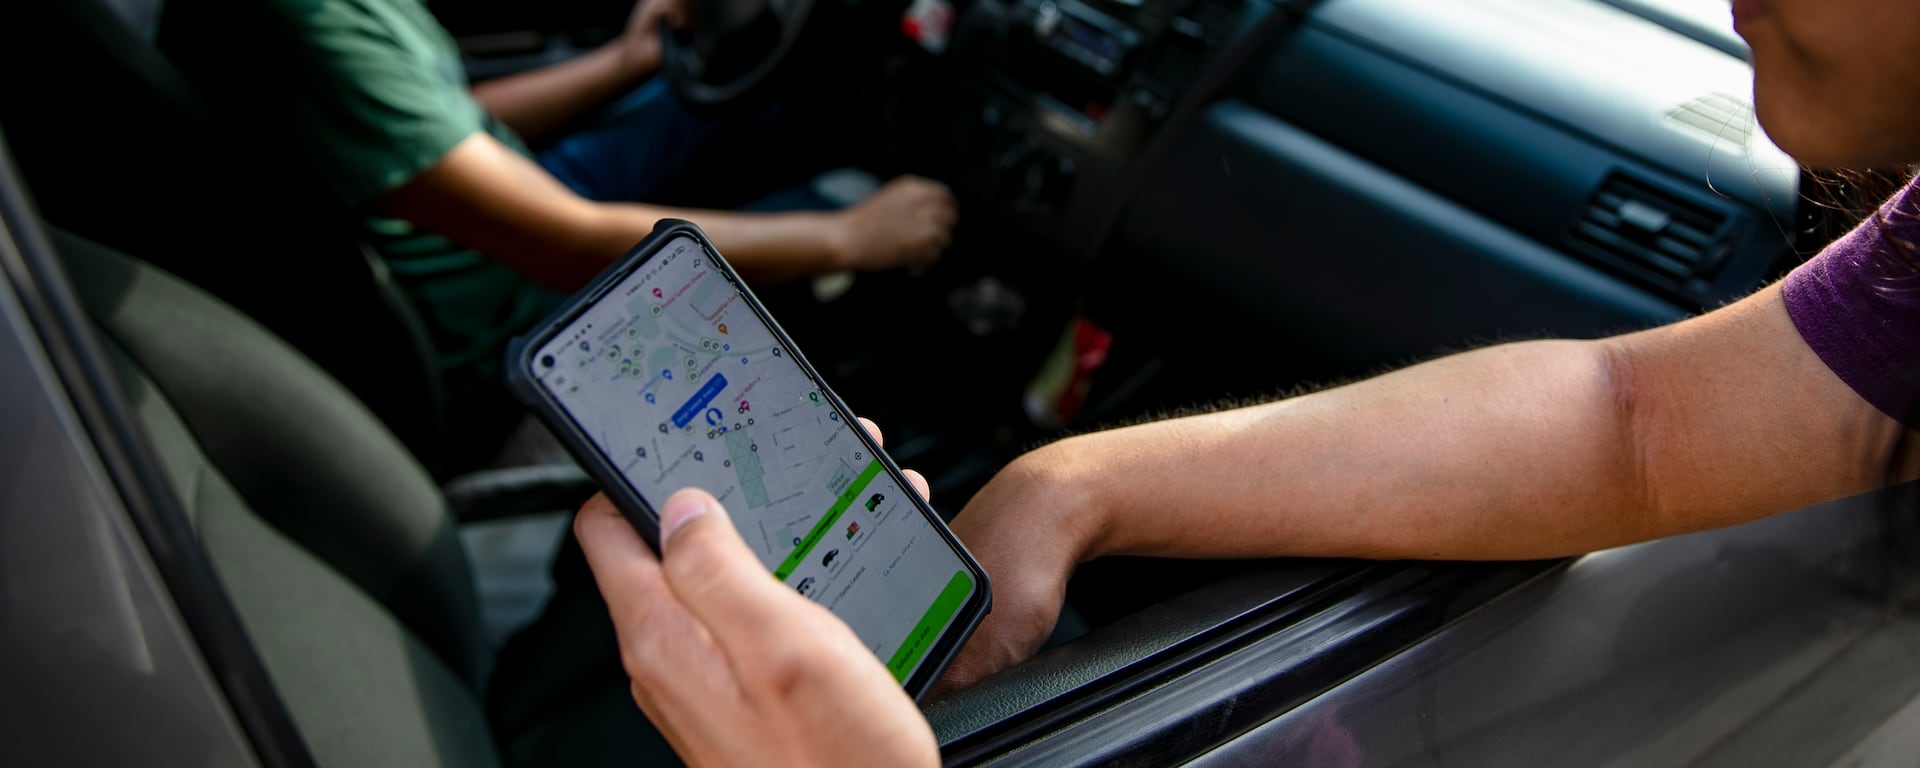 Impondrán casi S/20 mil a taxis por app sin autorización de la ATU y otras drásticas multas